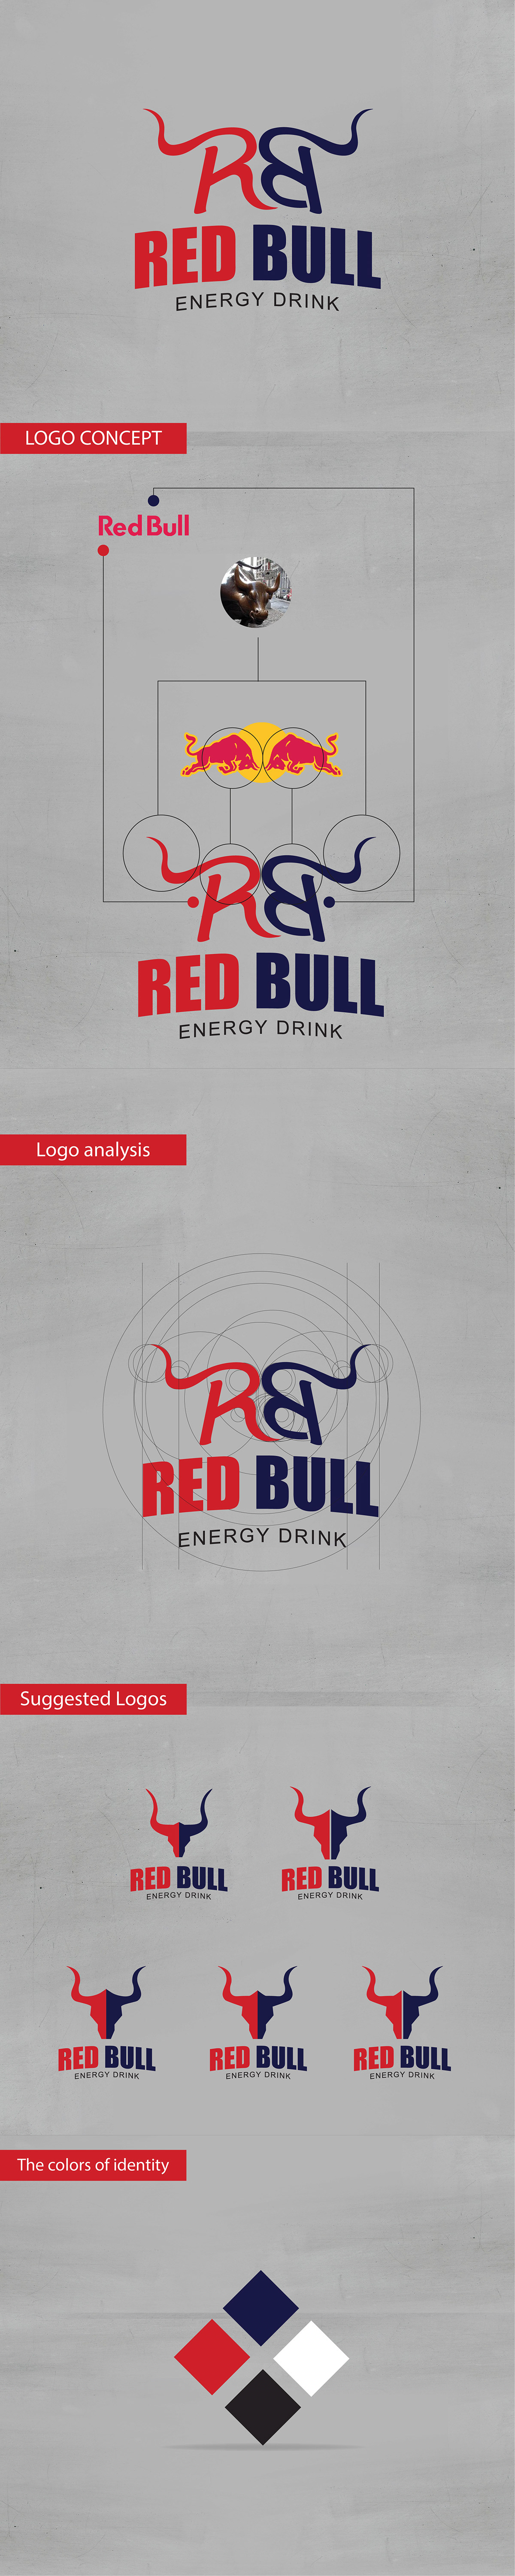 red bull advertisement analysis